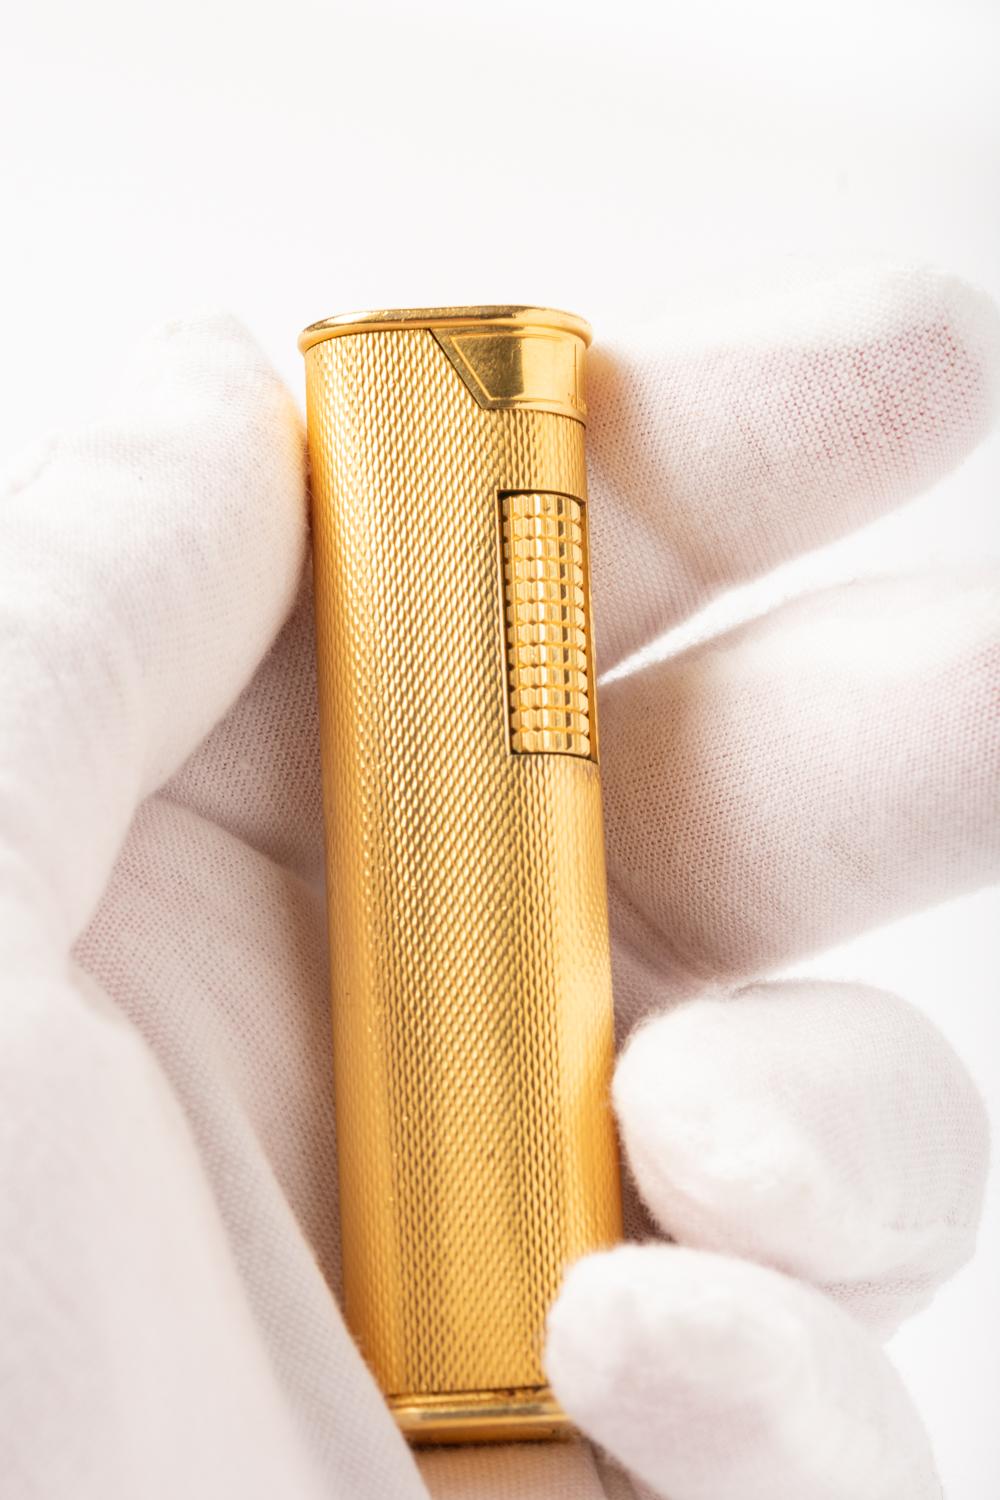 Vintage Dunhill Gold Plated Slim Lighter 2